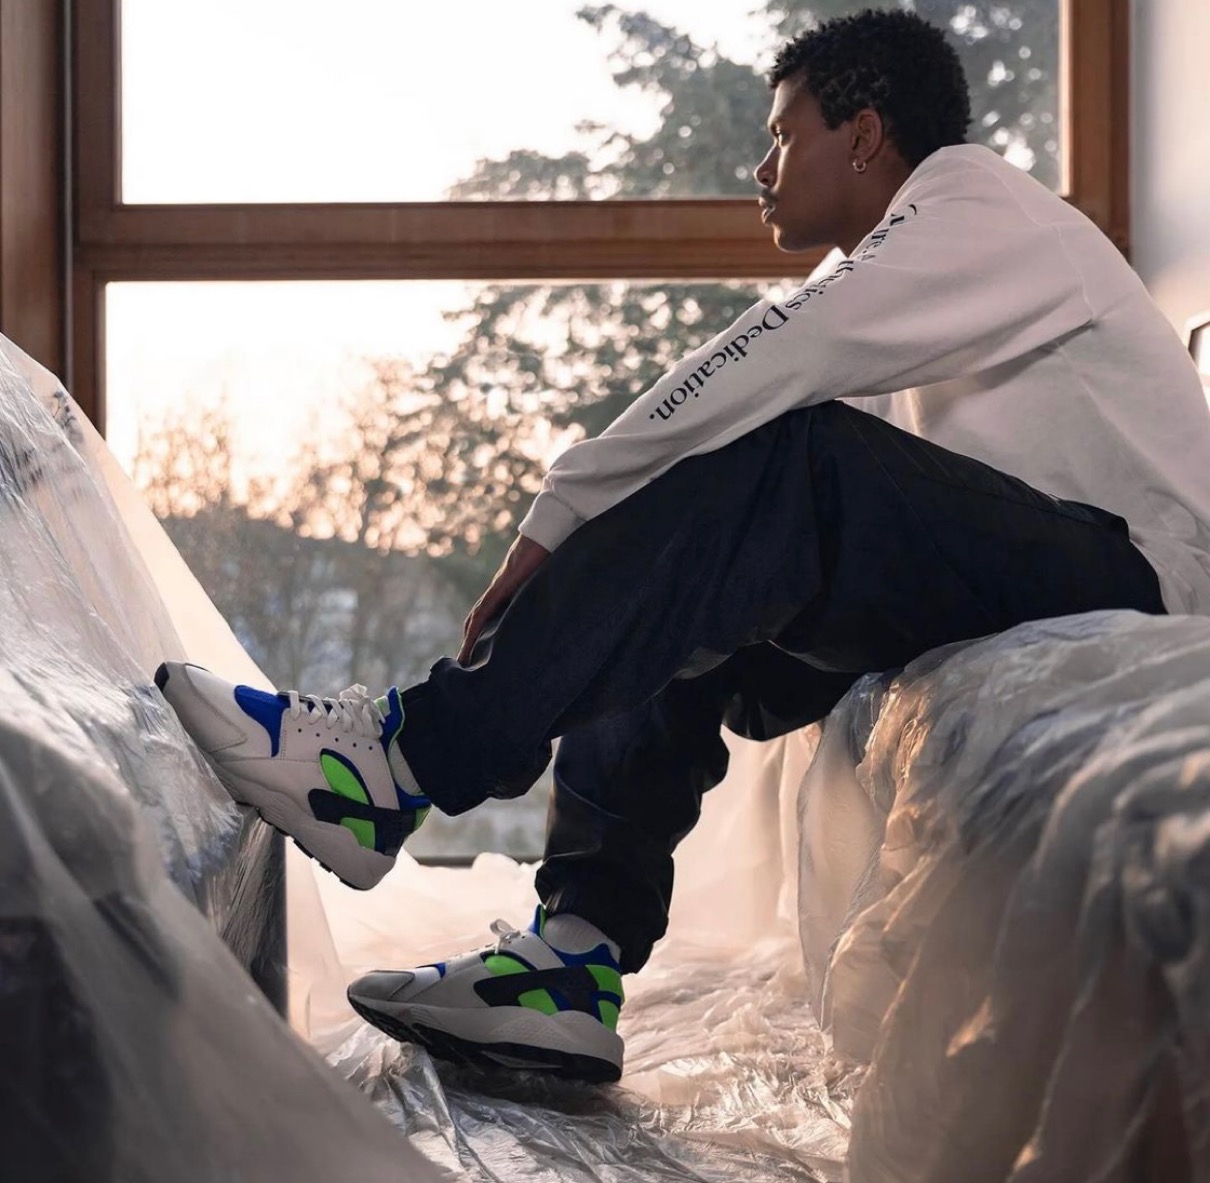 Nike】Air Huarache OG “Scream Green”が国内3月12日に復刻発売予定 